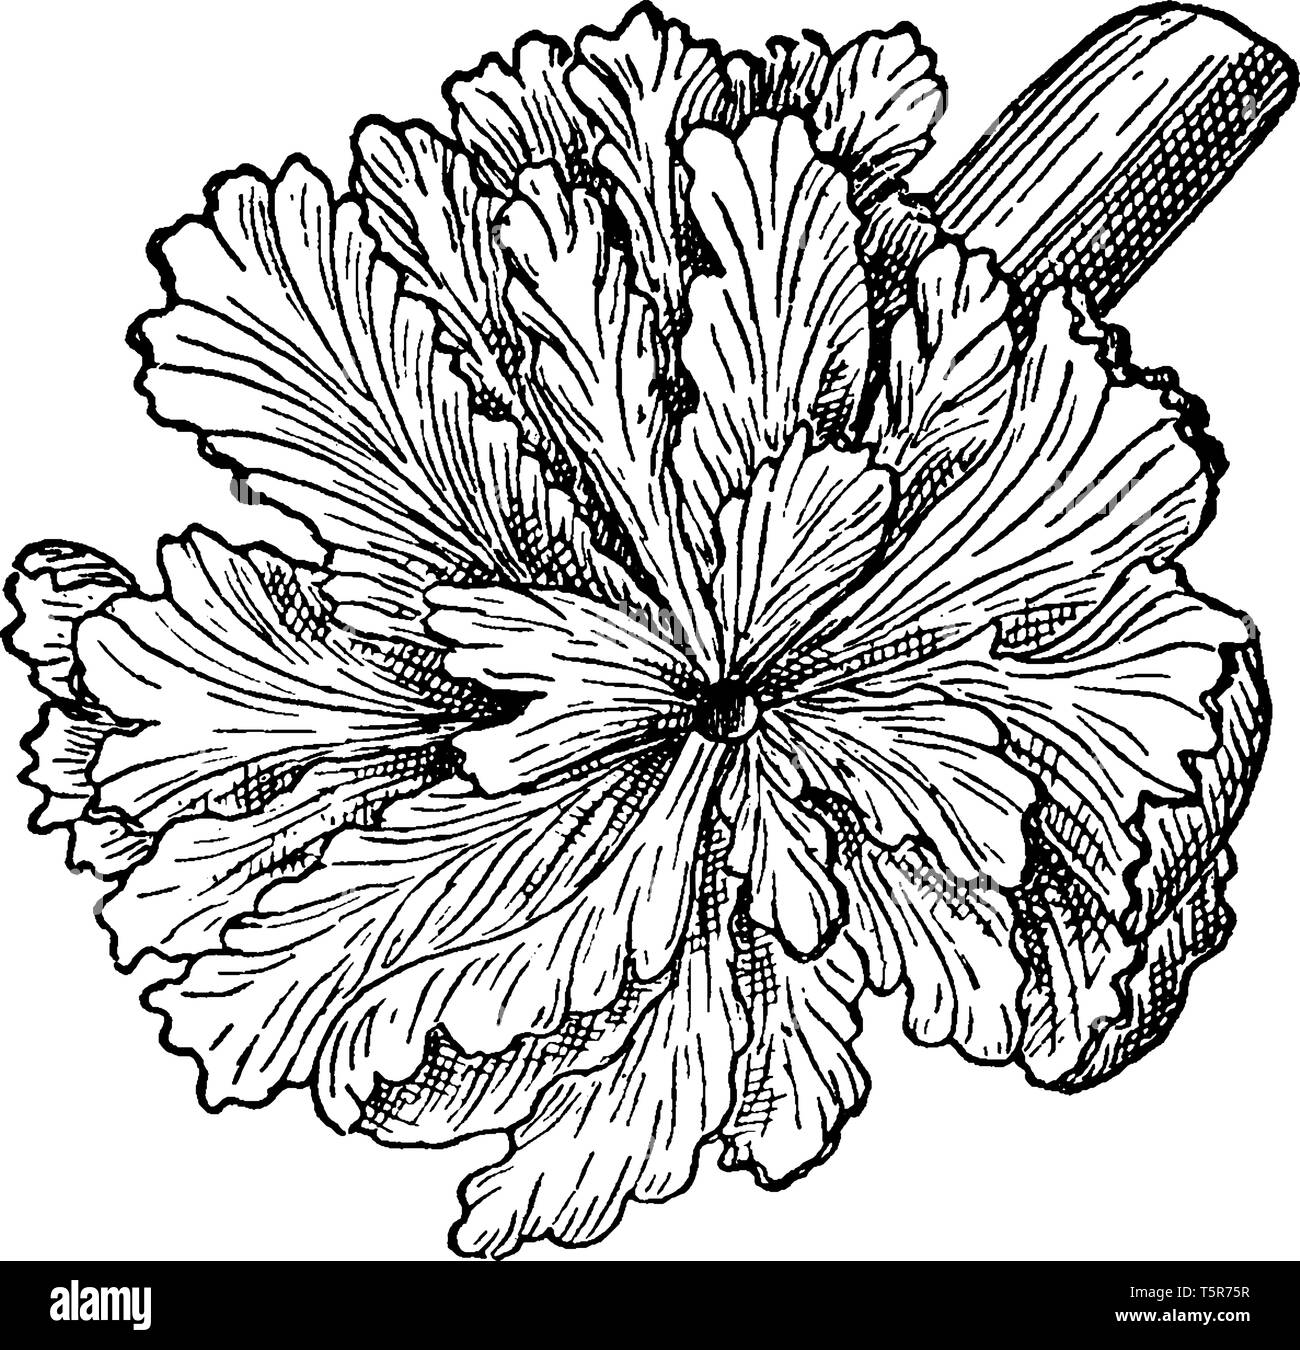 È comunemente noto come il legno di rosa, è un parassita completamente fioritura delle piante, l'unico endemico della Nuova Zelanda. Si tratta di un tondo presenta verrucosa tubero-come stelo (fino a 50 Illustrazione Vettoriale